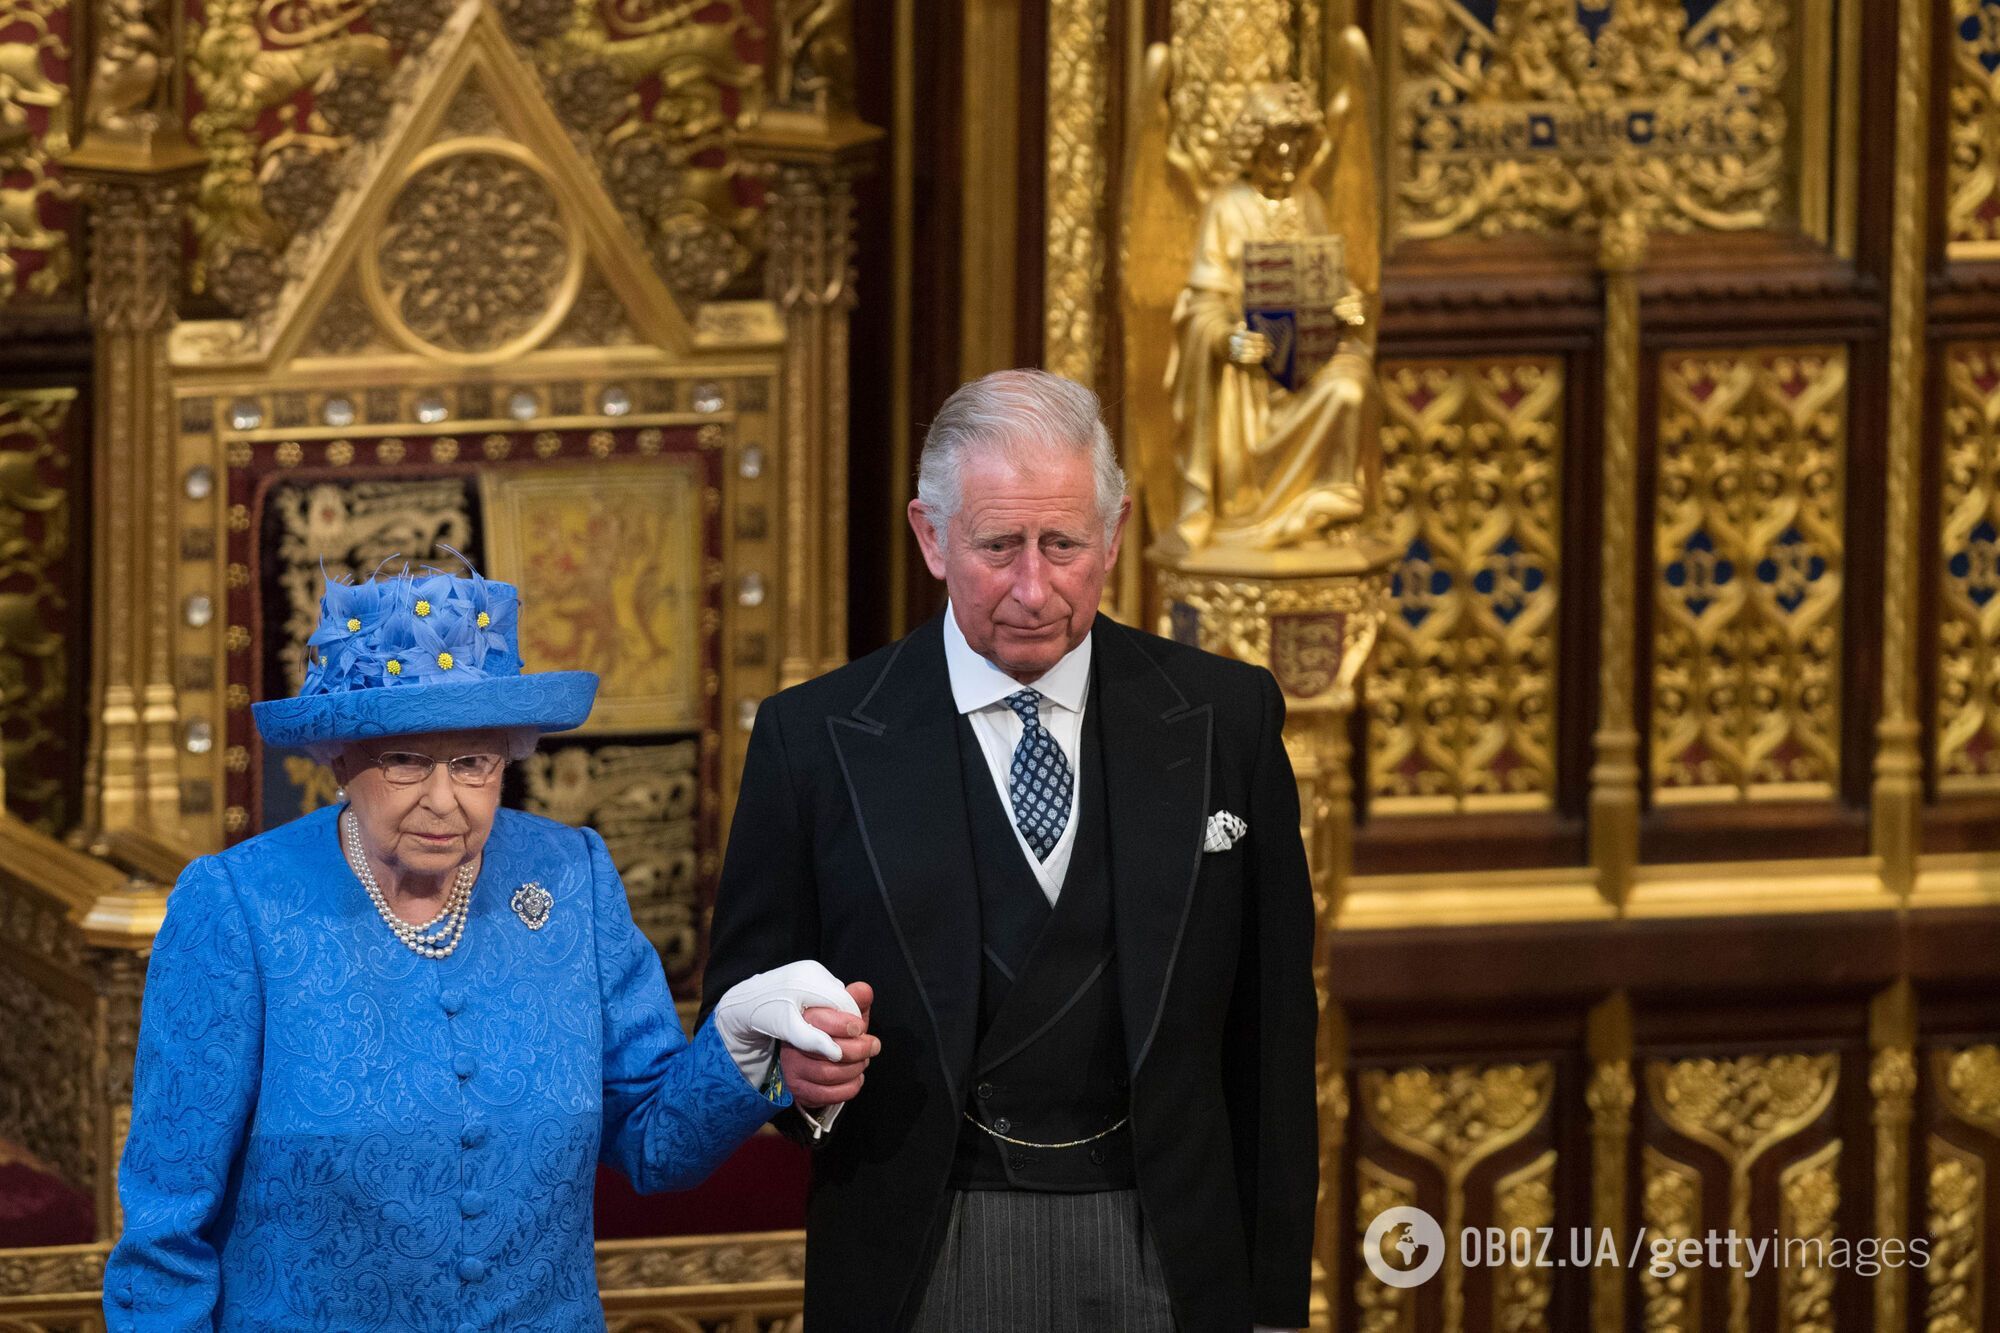 Чарльз ІІІ показал символическое приглашение на свою коронацию: как выглядели открытки Елизаветы ІІ 70 лет назад